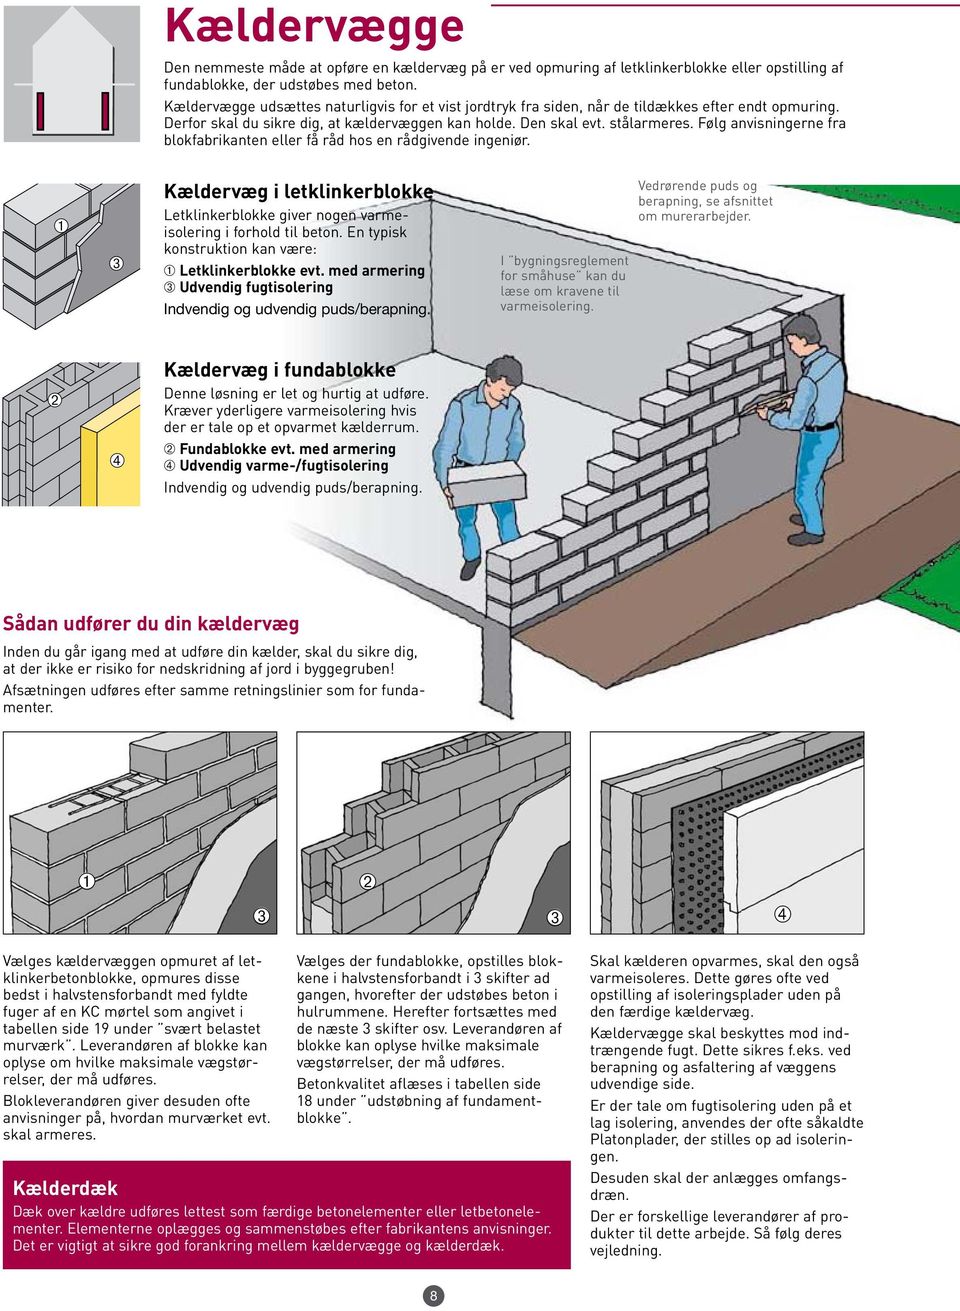 Følg anvisningerne fra blokfabrikanten eller få råd hos en rådgivende ingeniør. Kældervæg i letklinkerblokke Letklinkerblokke giver nogen varmeisolering i forhold til beton.